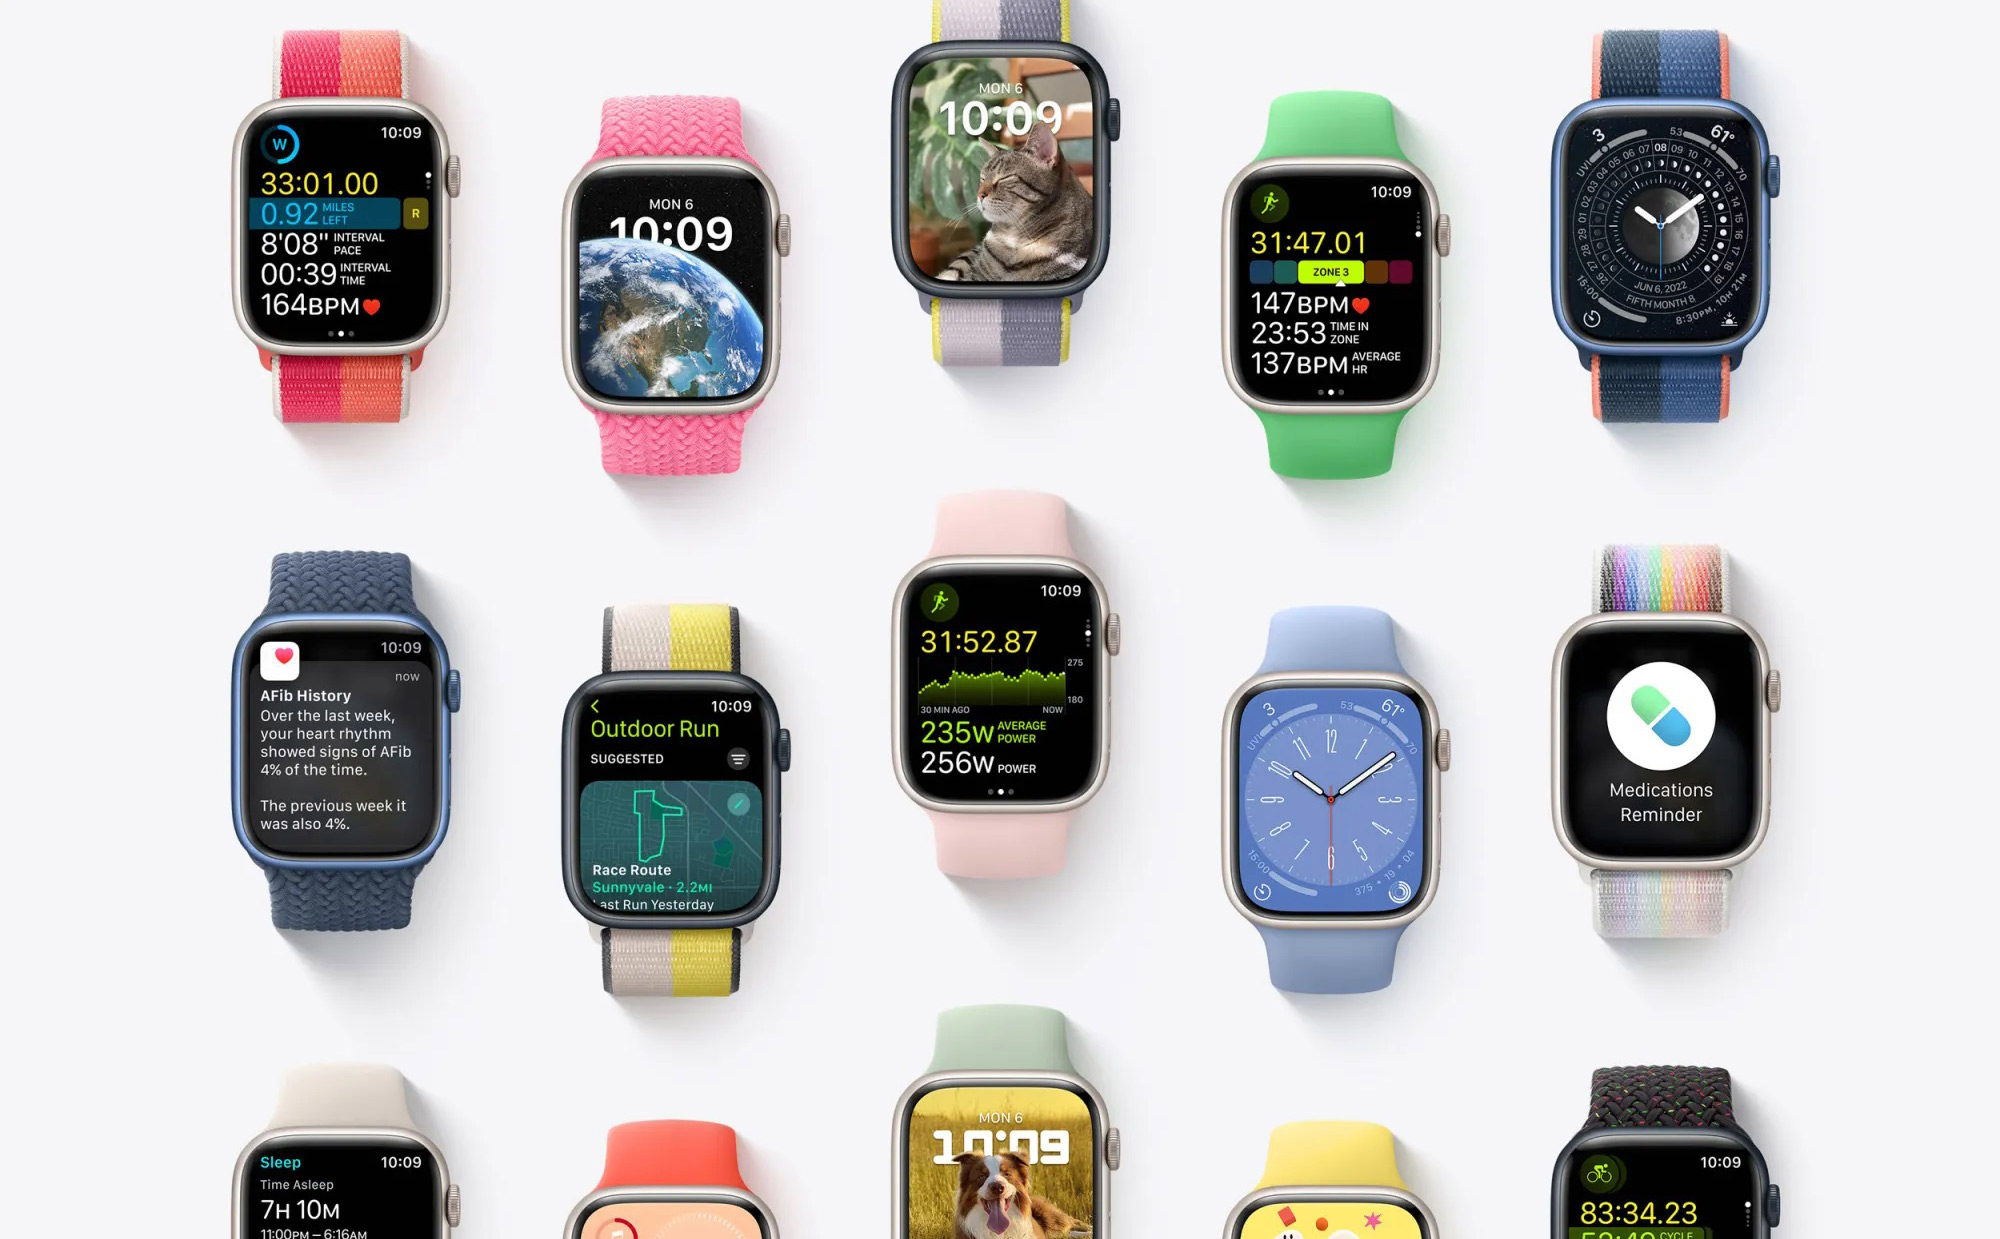 Mark Gurman: Apple Watch phiên bản siêu bền sẽ được gắn nhãn “Pro”, thay thế các phiên bản Edition